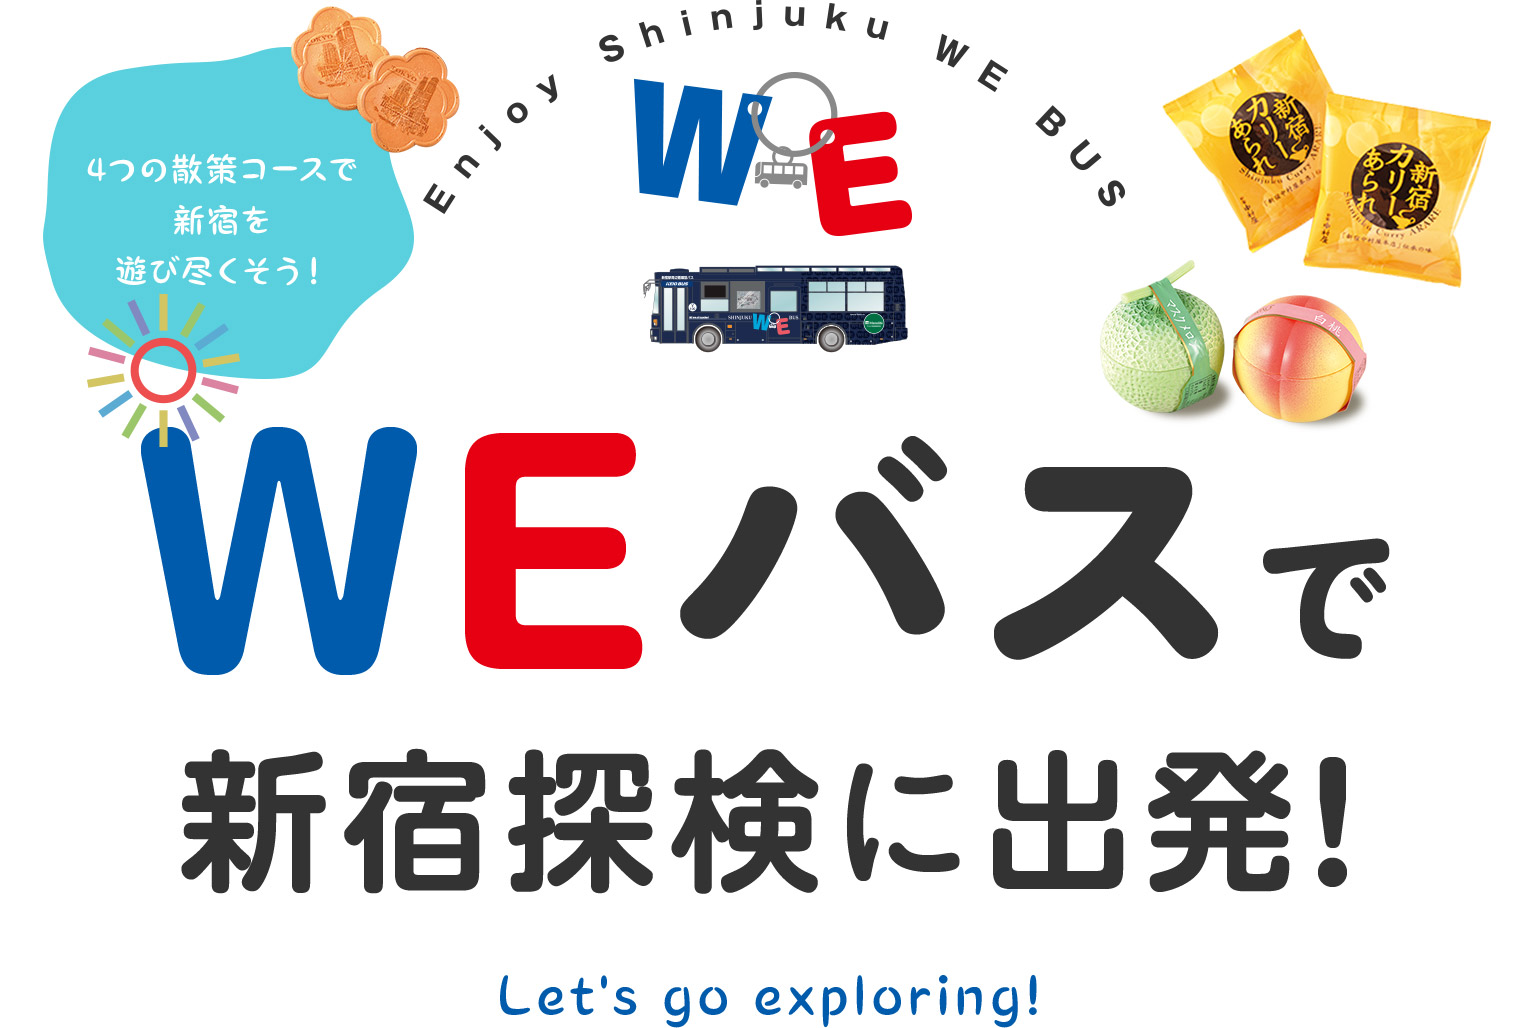 4つの散策コースで新宿を遊び尽くそう！ WEバスで新宿探検に出発！ Let's go exploring!